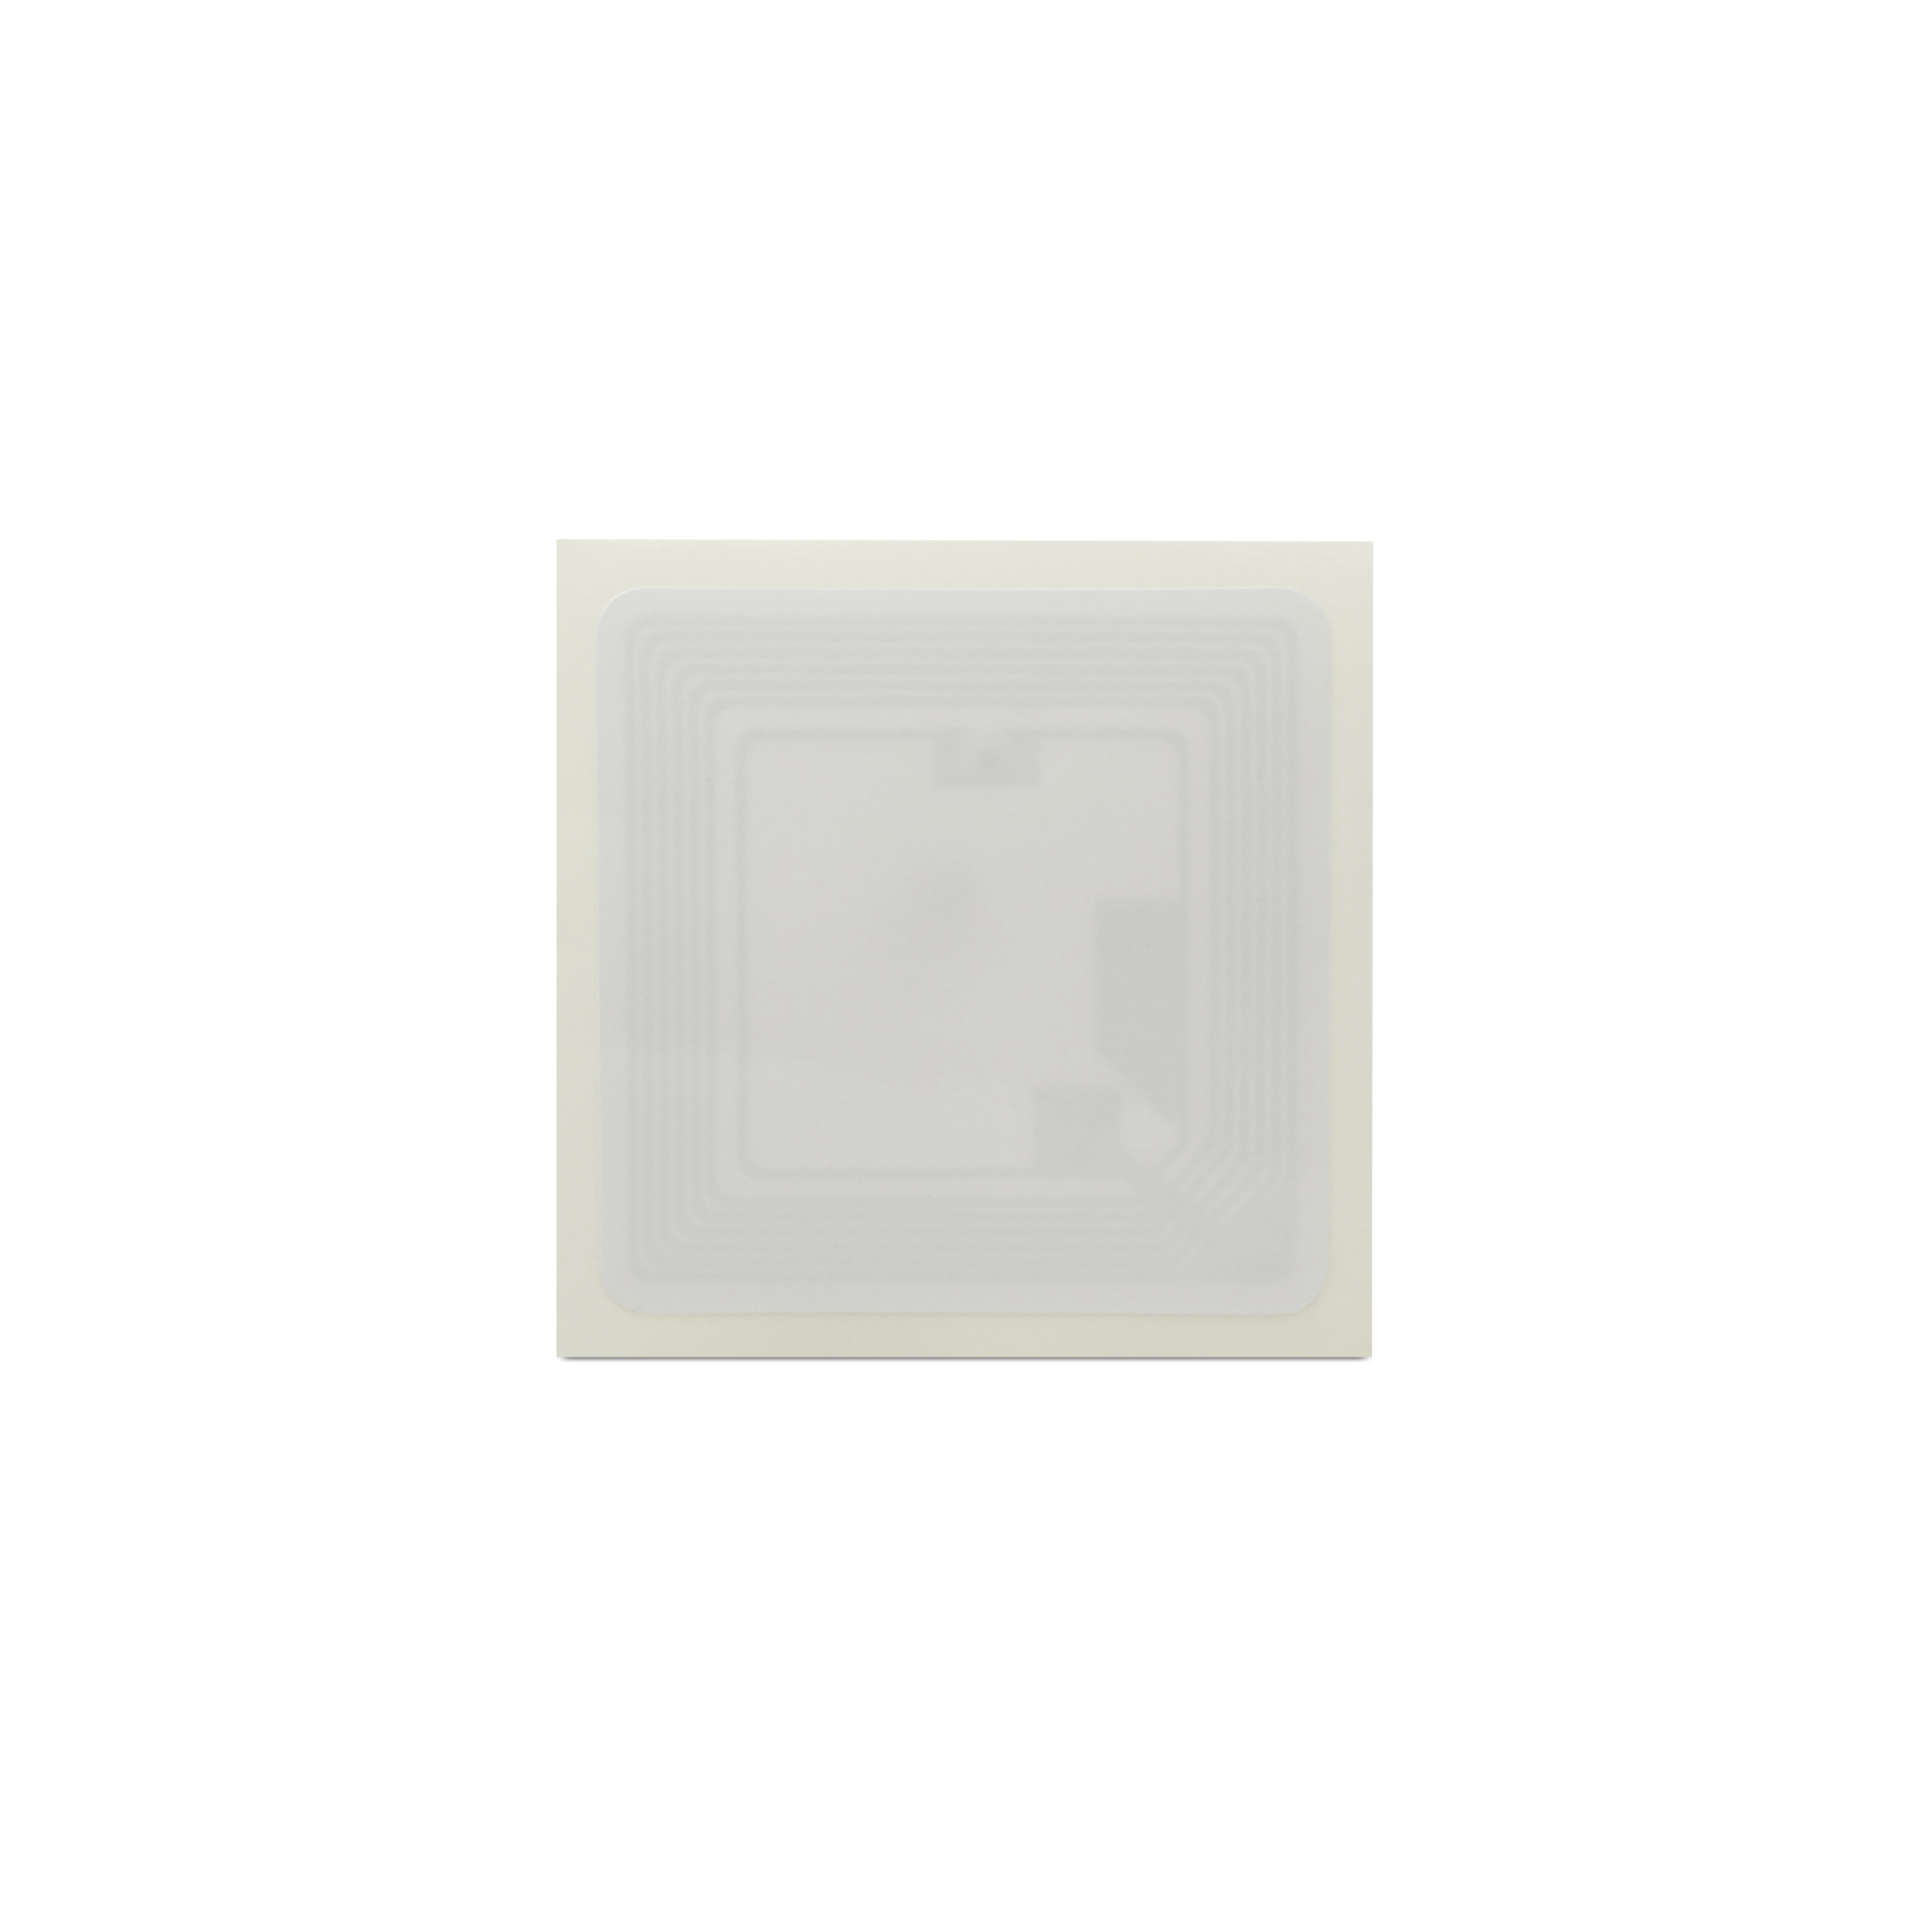 NFC Sticker PET - 35 x 35 mm - NTAG213 - 180 Byte - quadratisch - weiß 